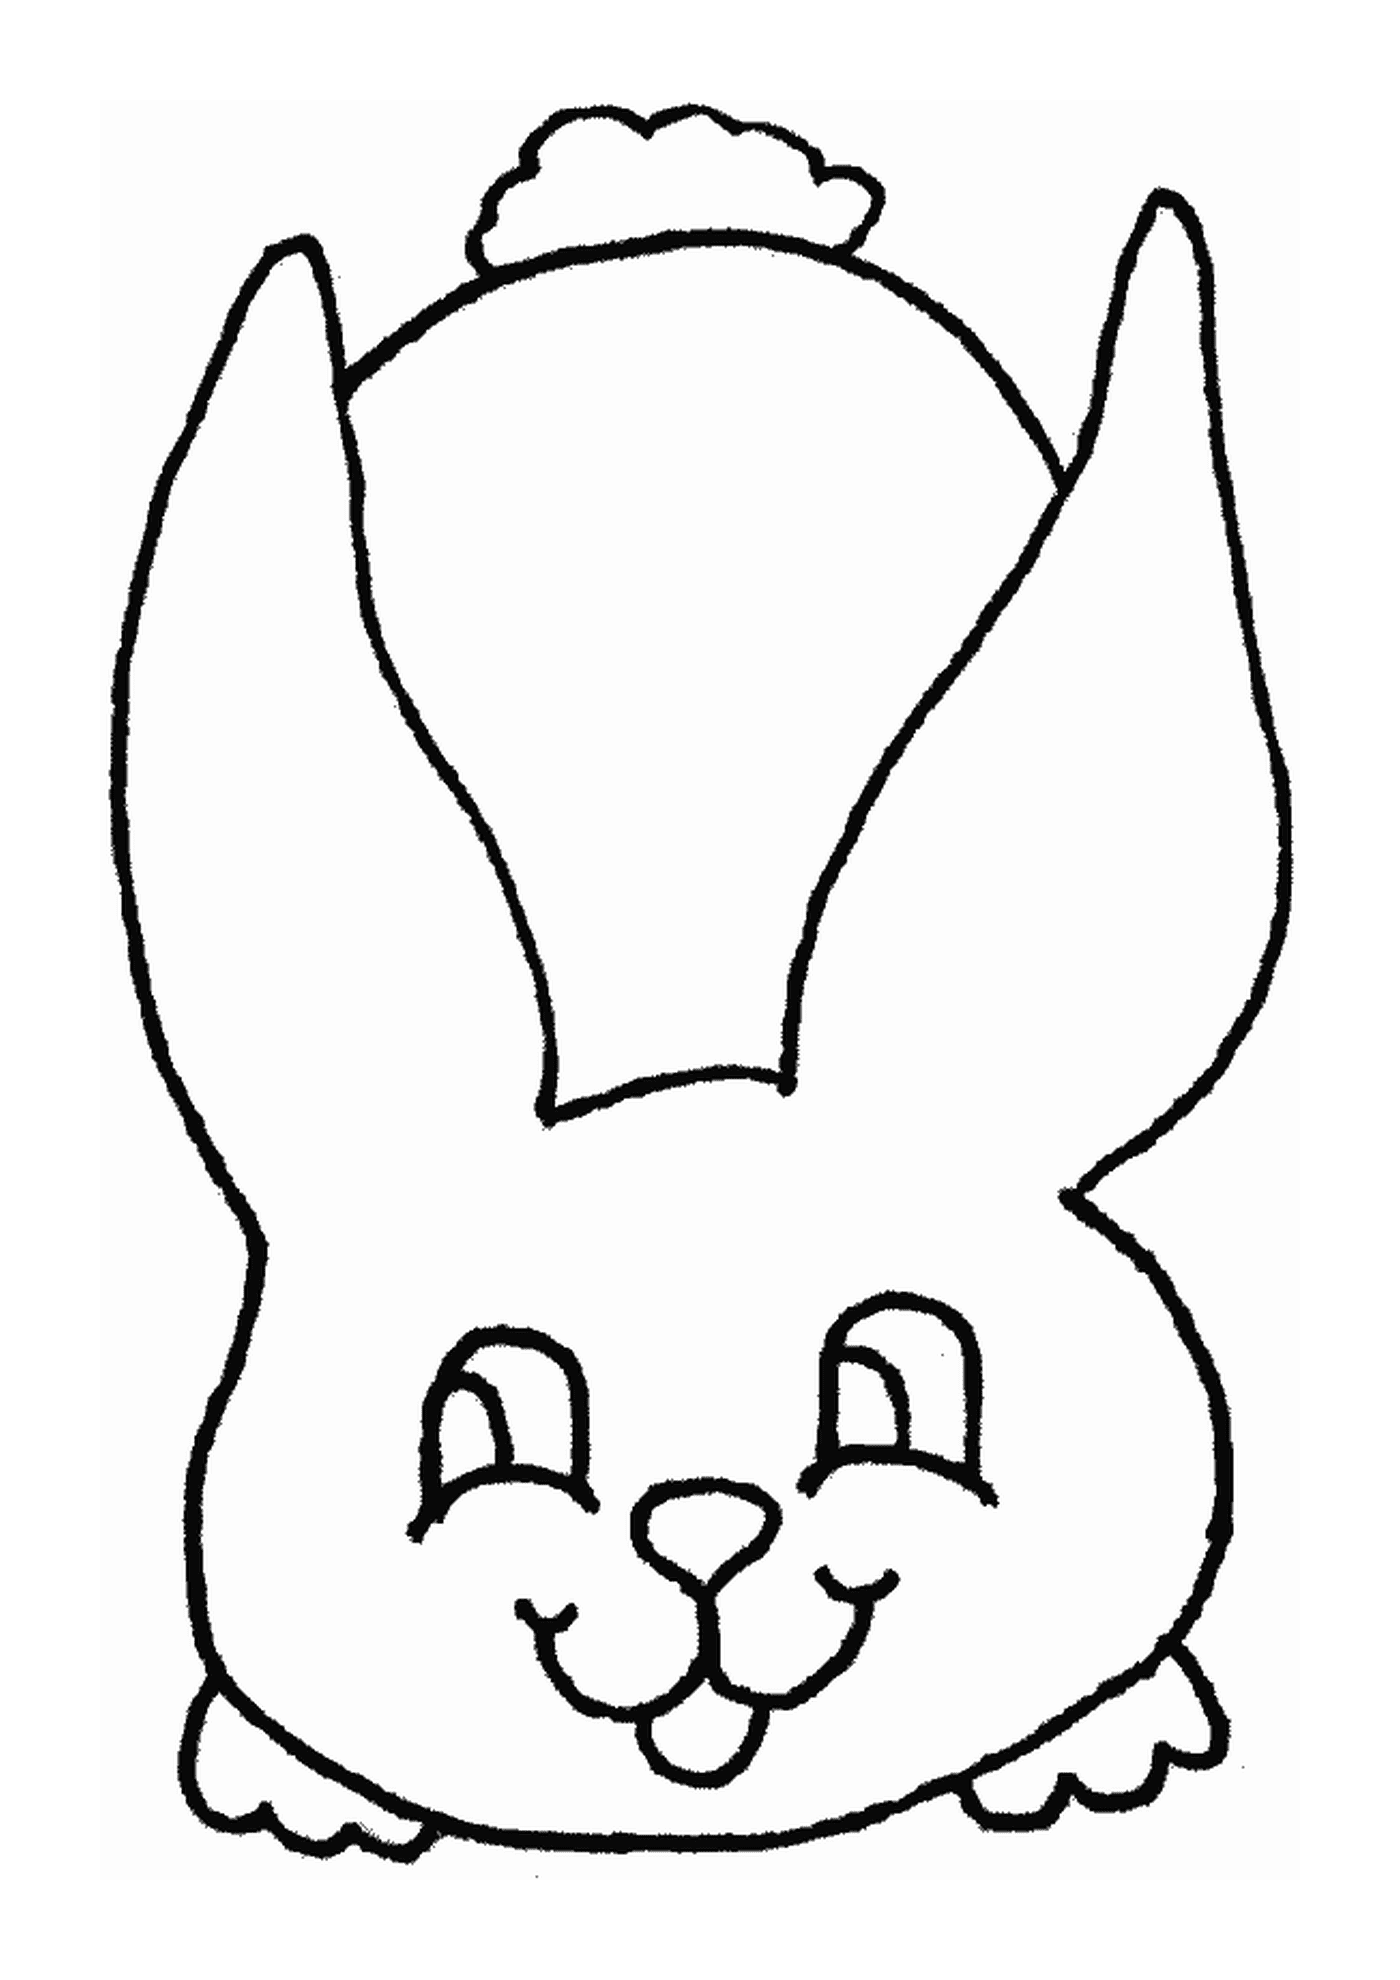  Conejo dibujado desde el frente 